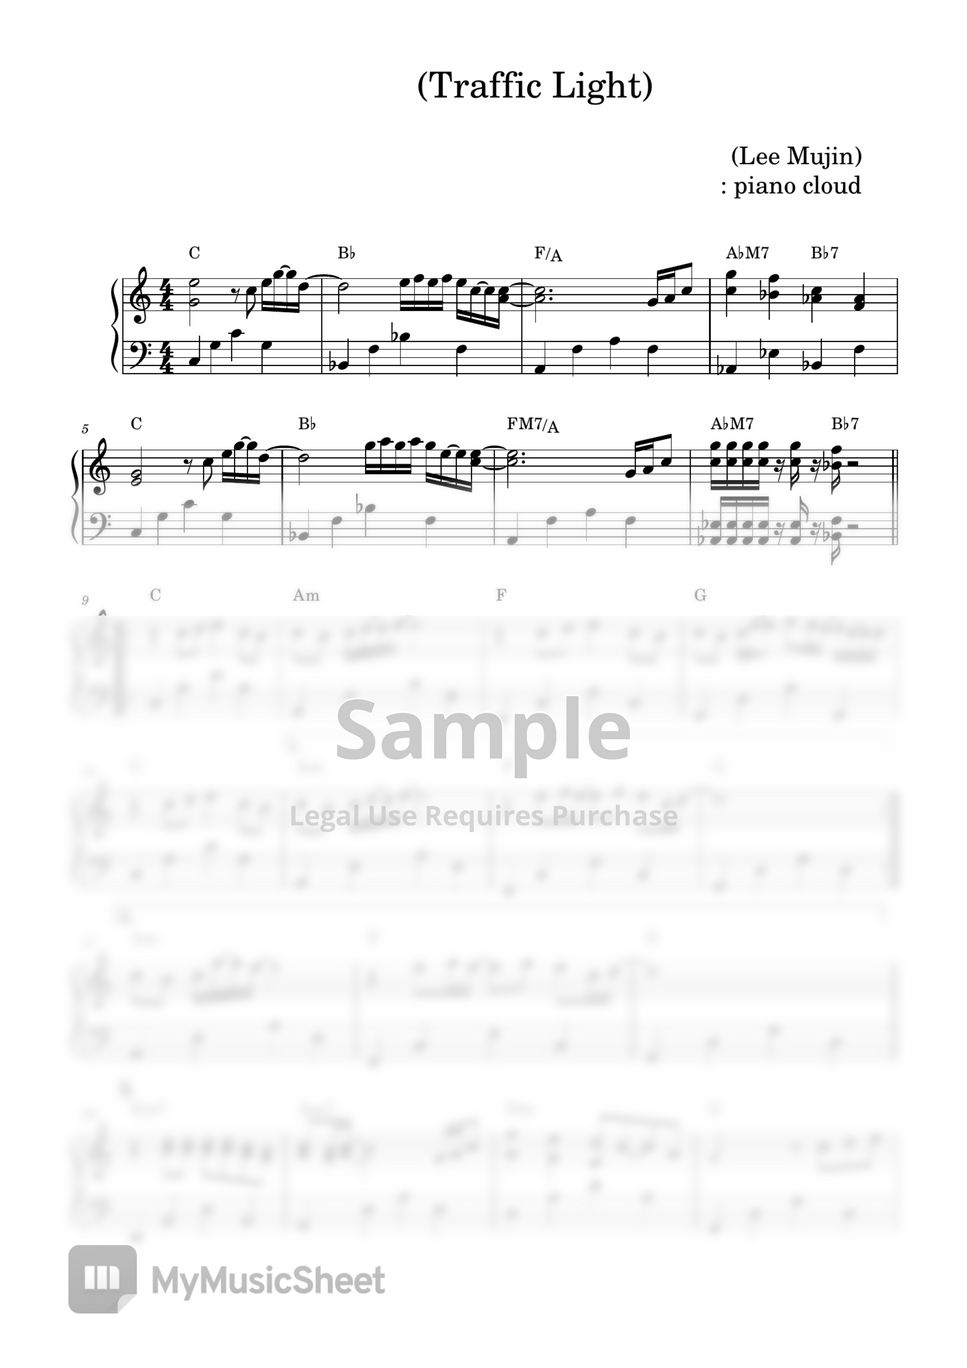 Lee Mujin - Traffic Light (Traffic Light/Lee Mujin/piano cloud) by piano cloud